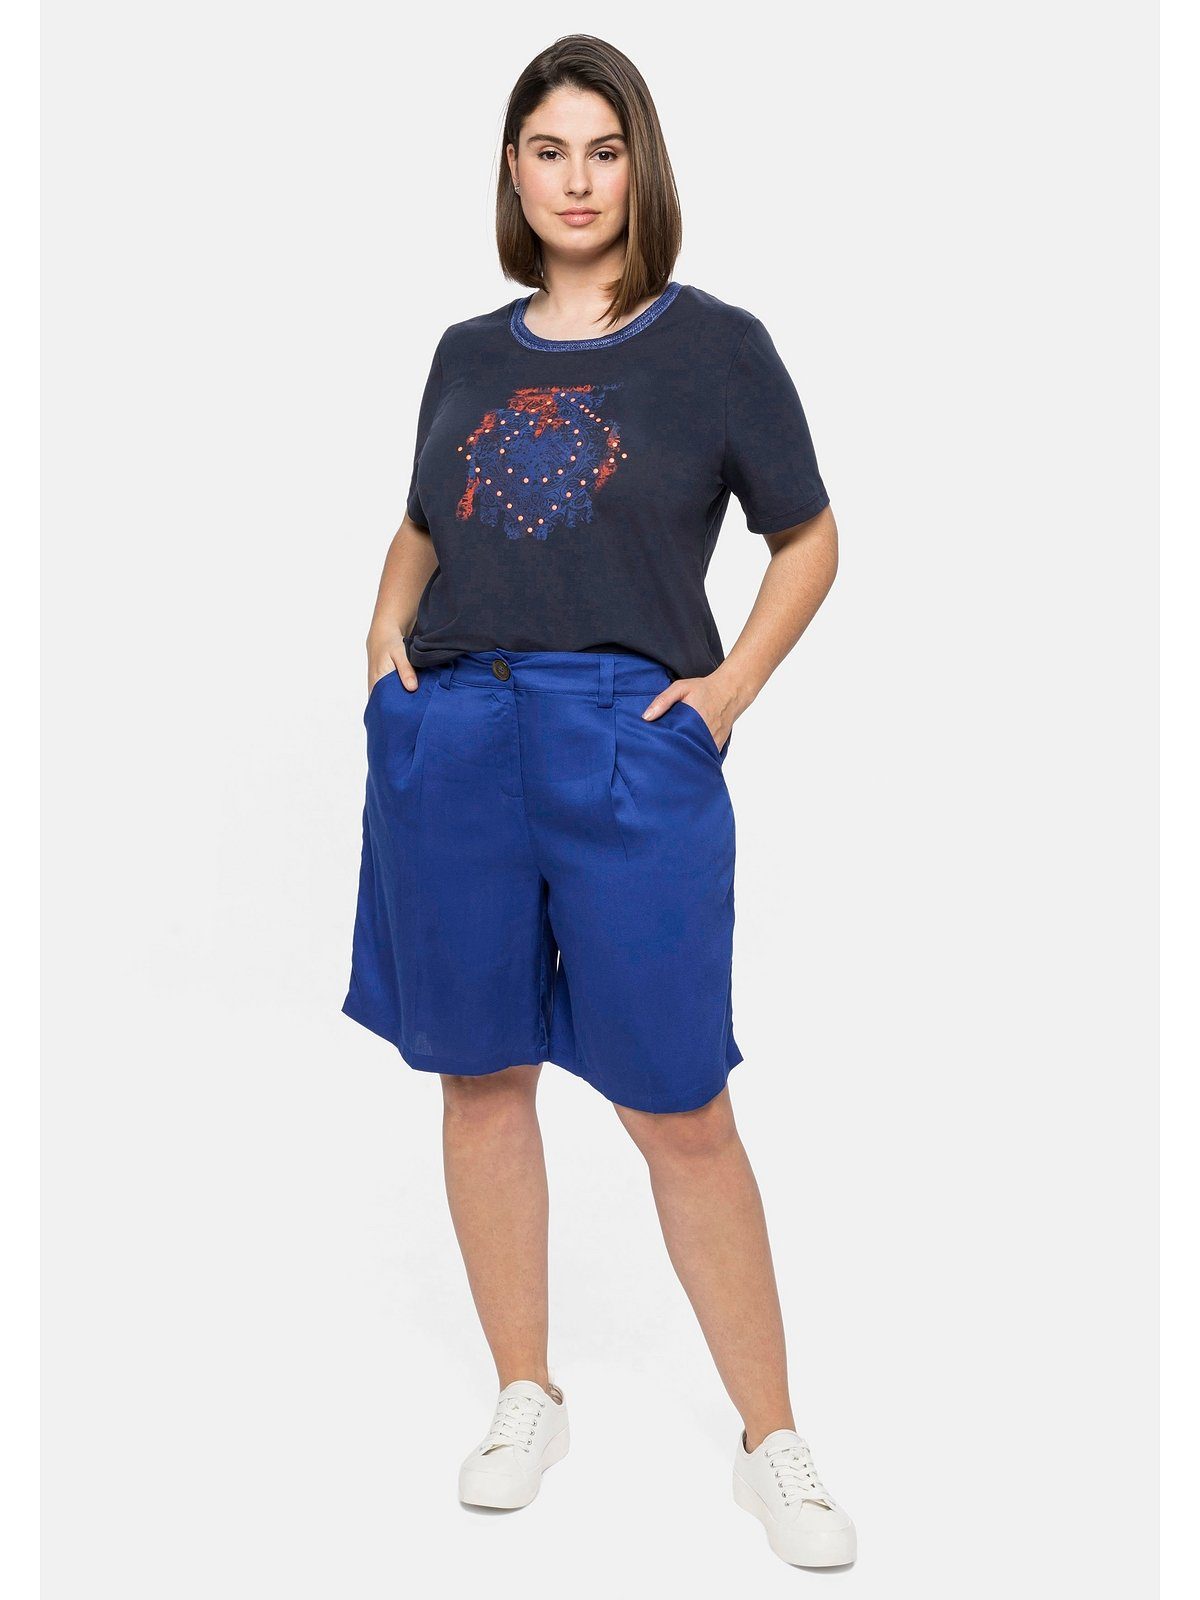 Sheego T-Shirt Große Größen mit Ausschnitt und modischem Effektgarn Frontdruck nachtblau am